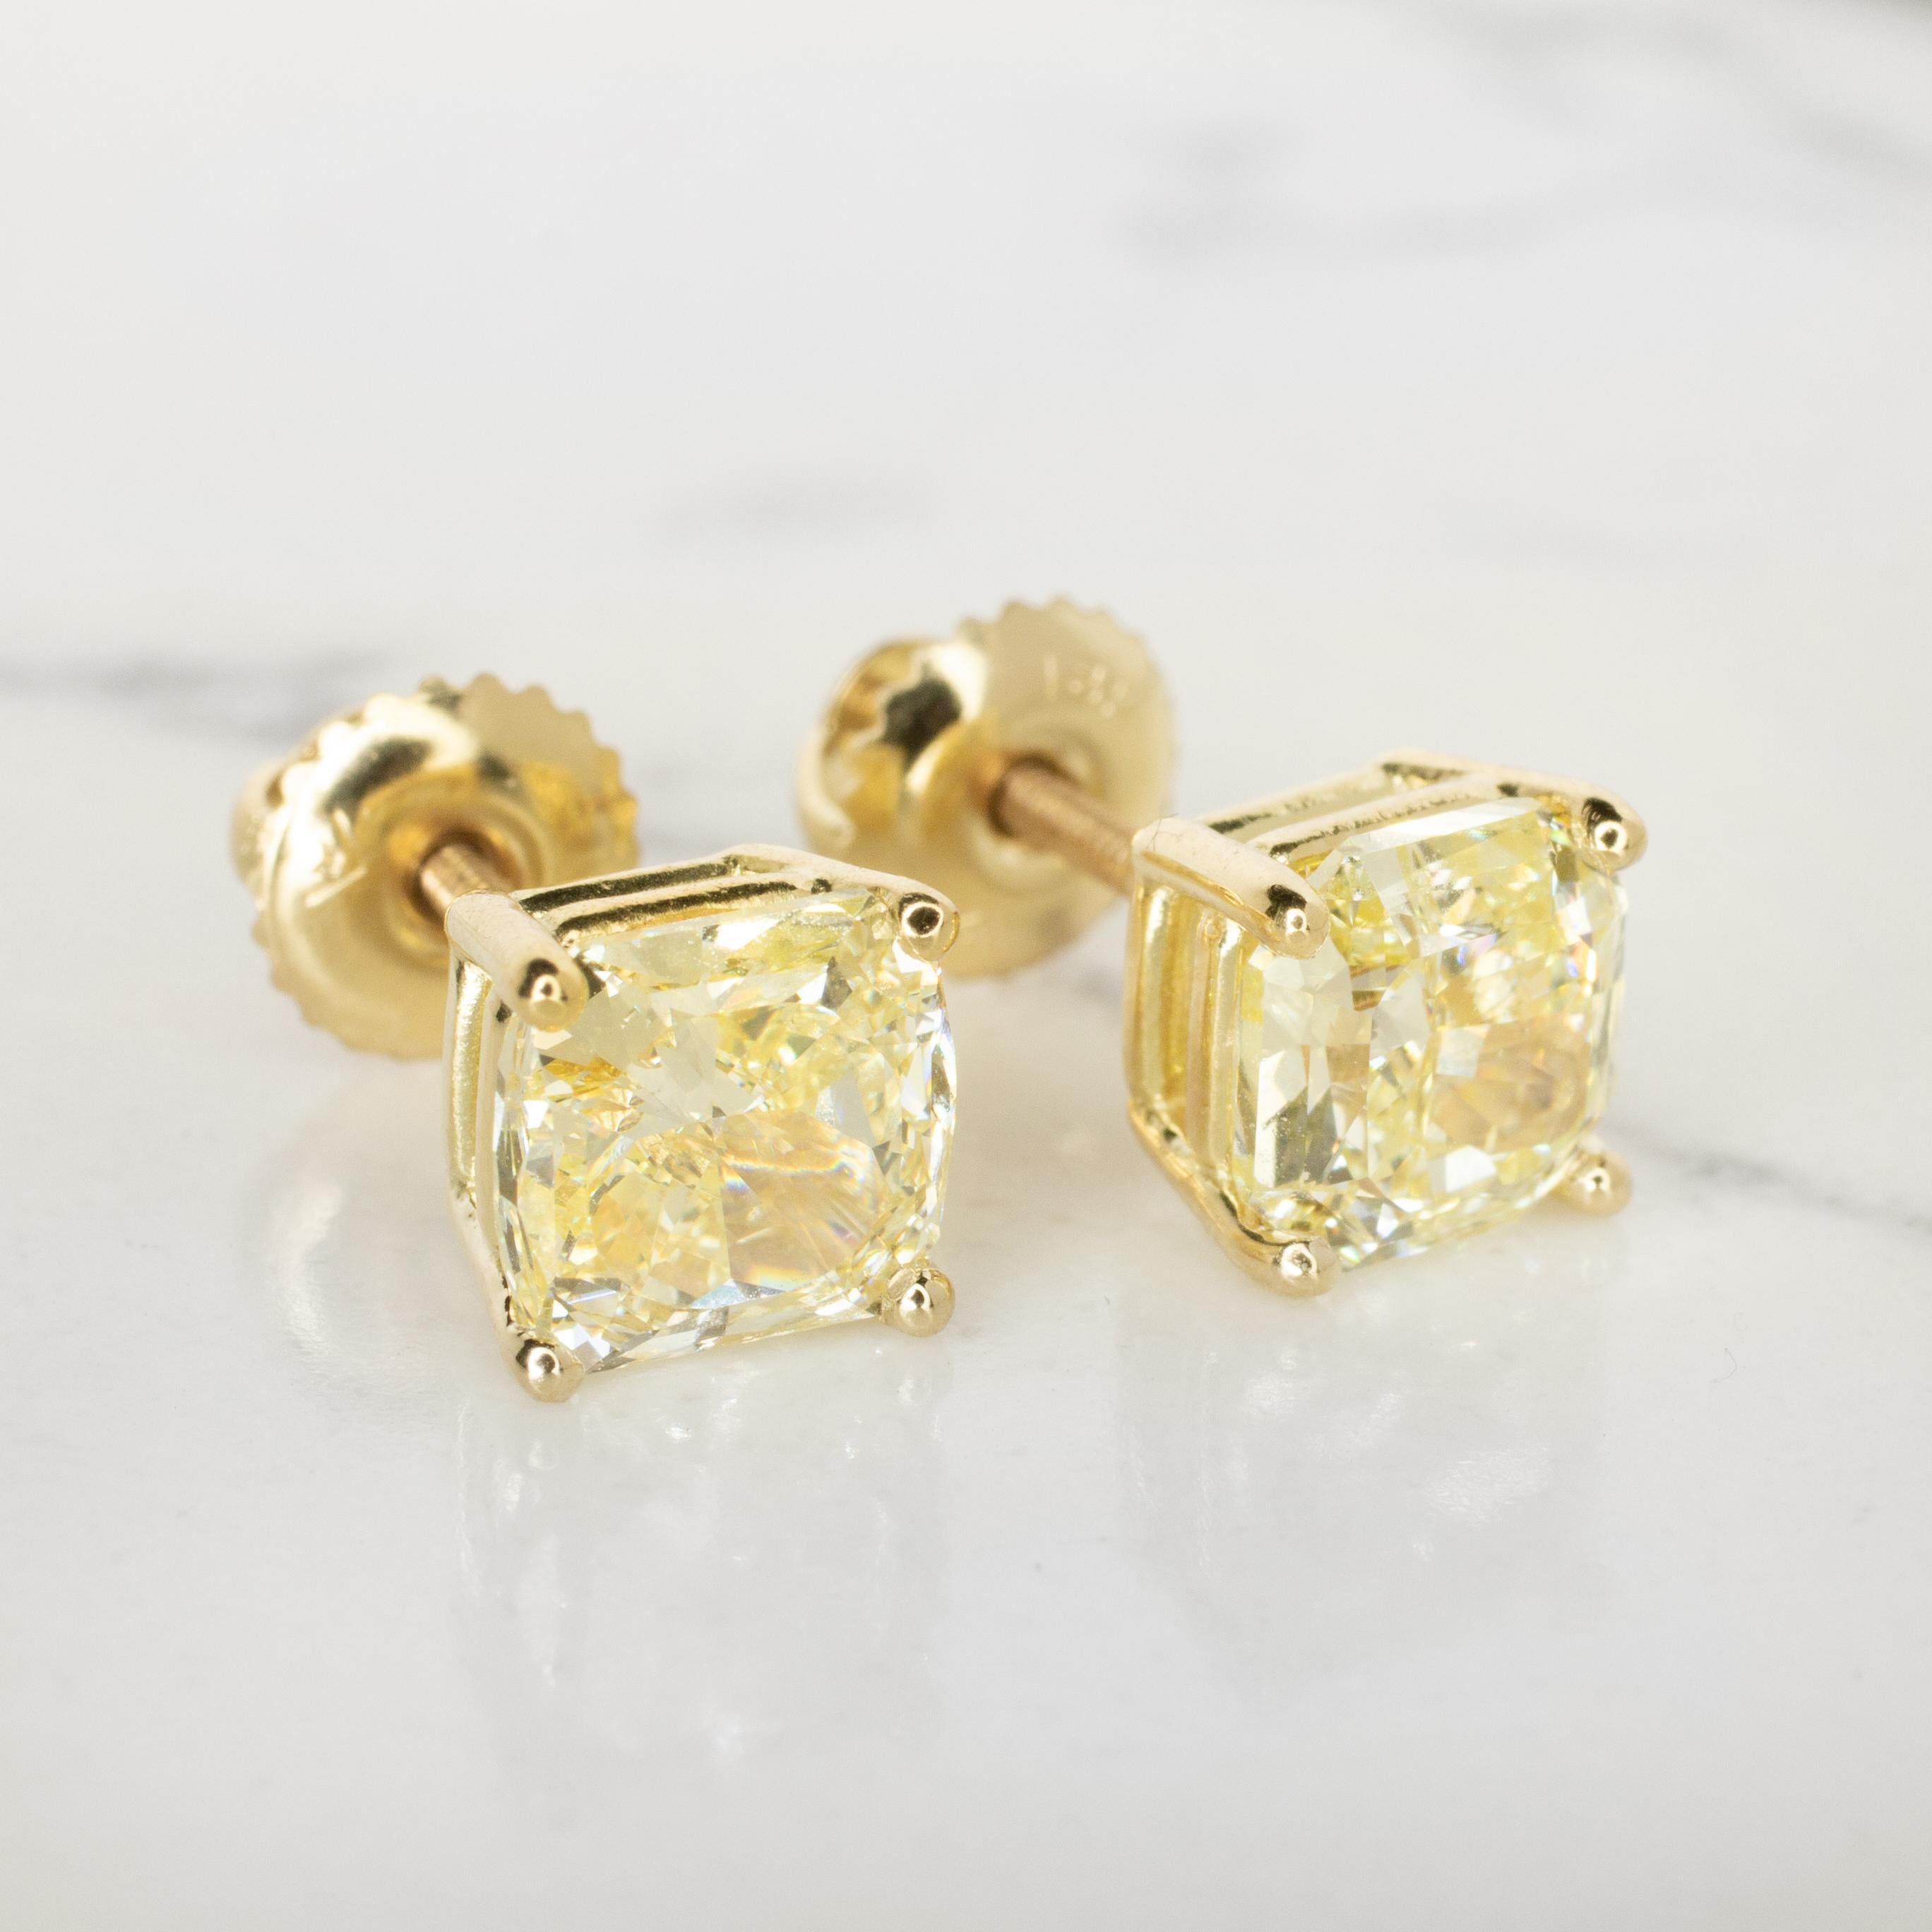 2 carat cushion cut diamond earrings